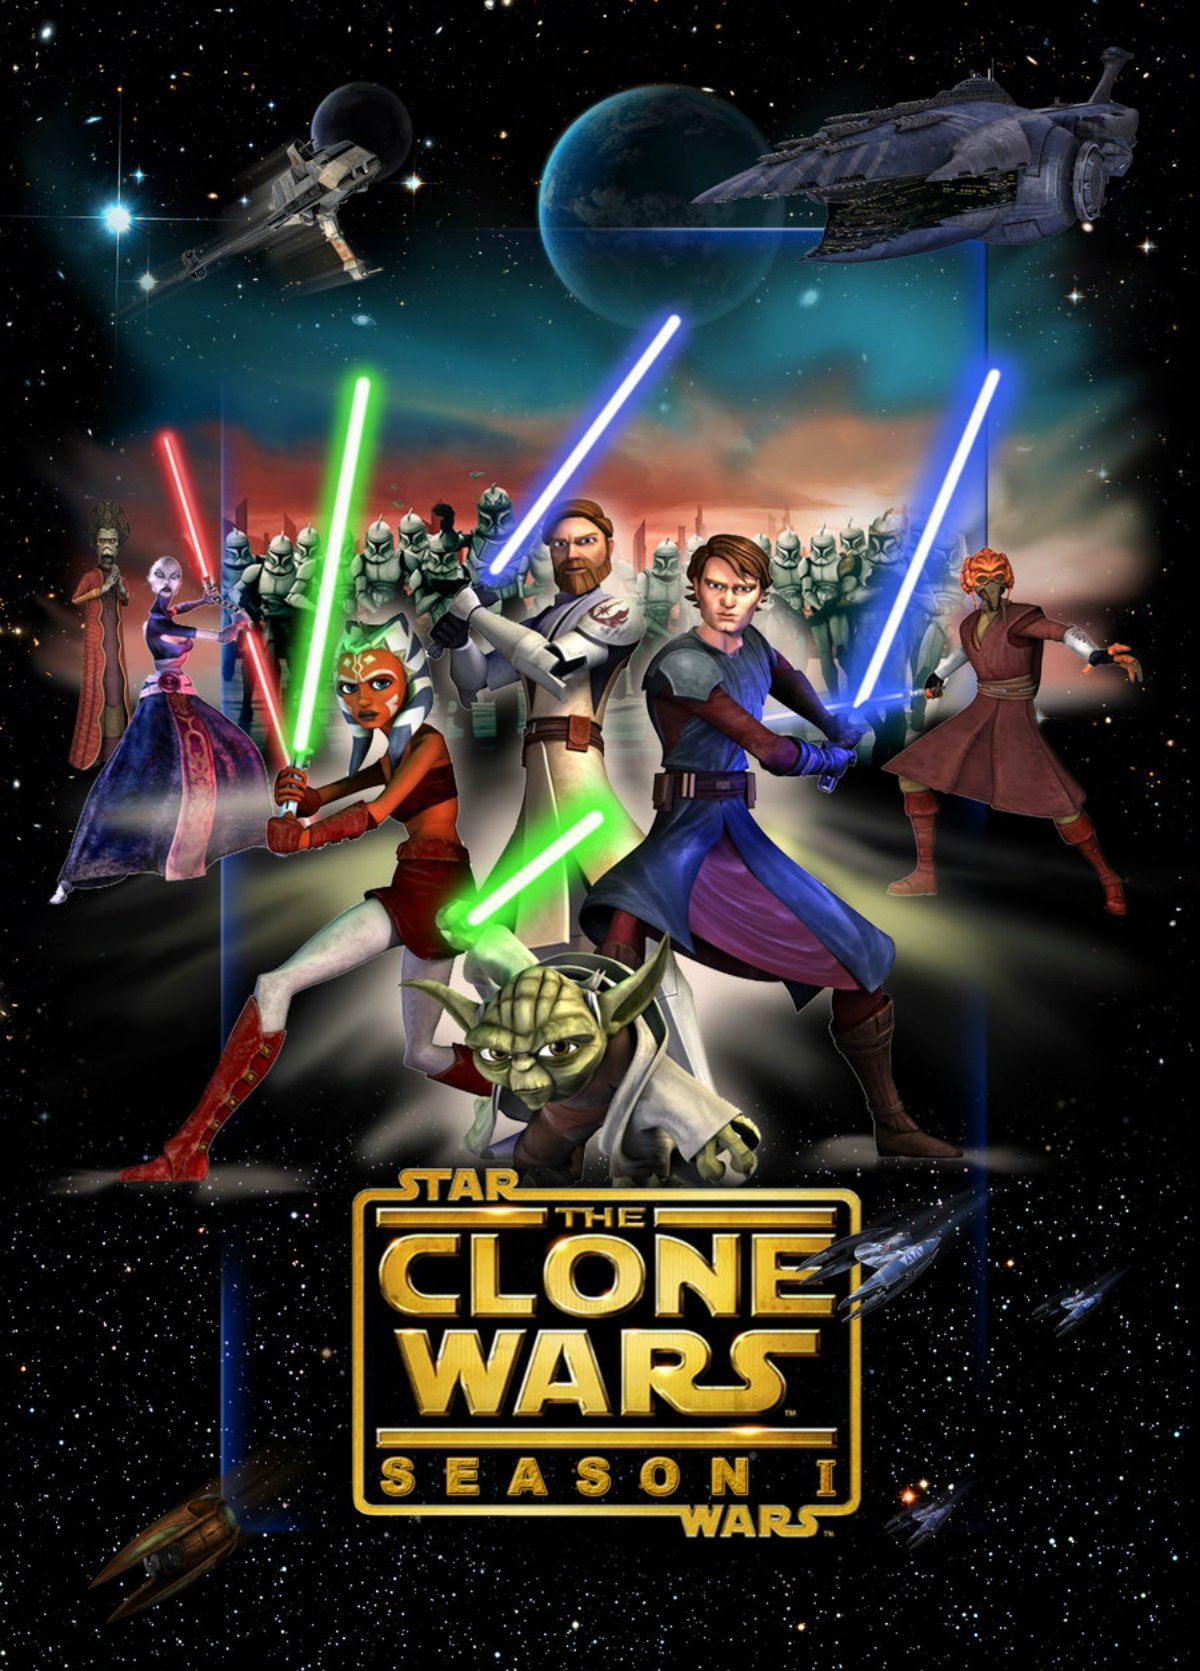 Star Wars: The Clone Wars (2008) - - SensaCine.com